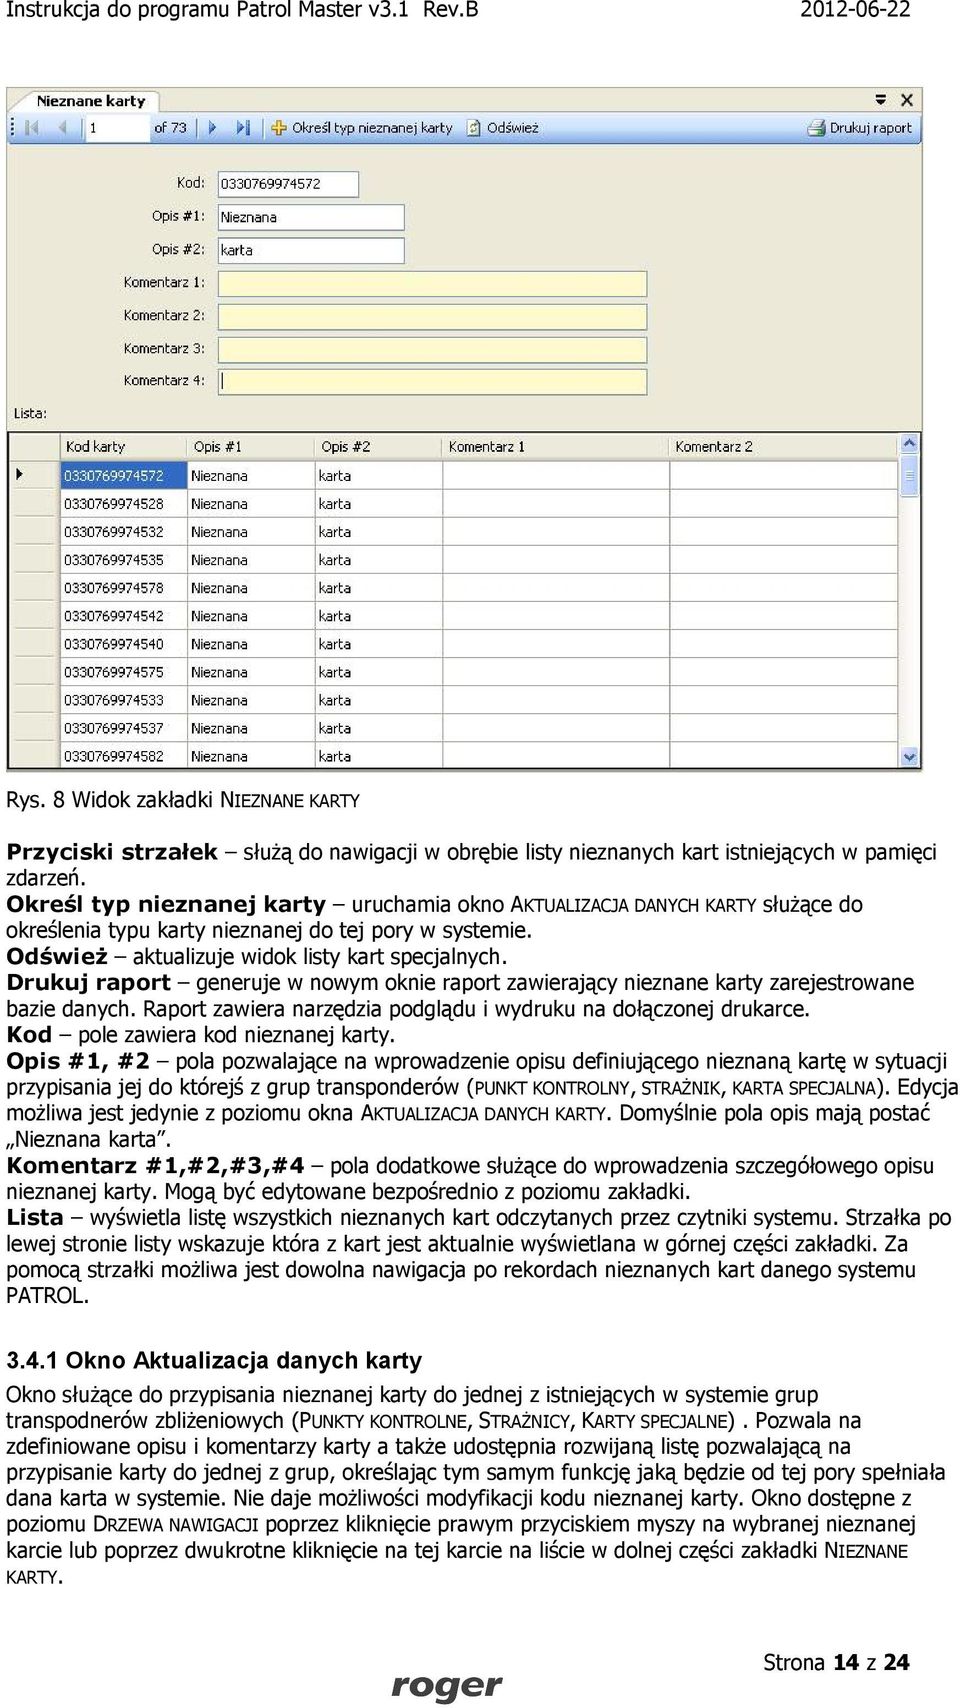 Drukuj raport generuje w nowym oknie raport zawierający nieznane karty zarejestrowane bazie danych. Raport zawiera narzędzia podglądu i wydruku na dołączonej drukarce.